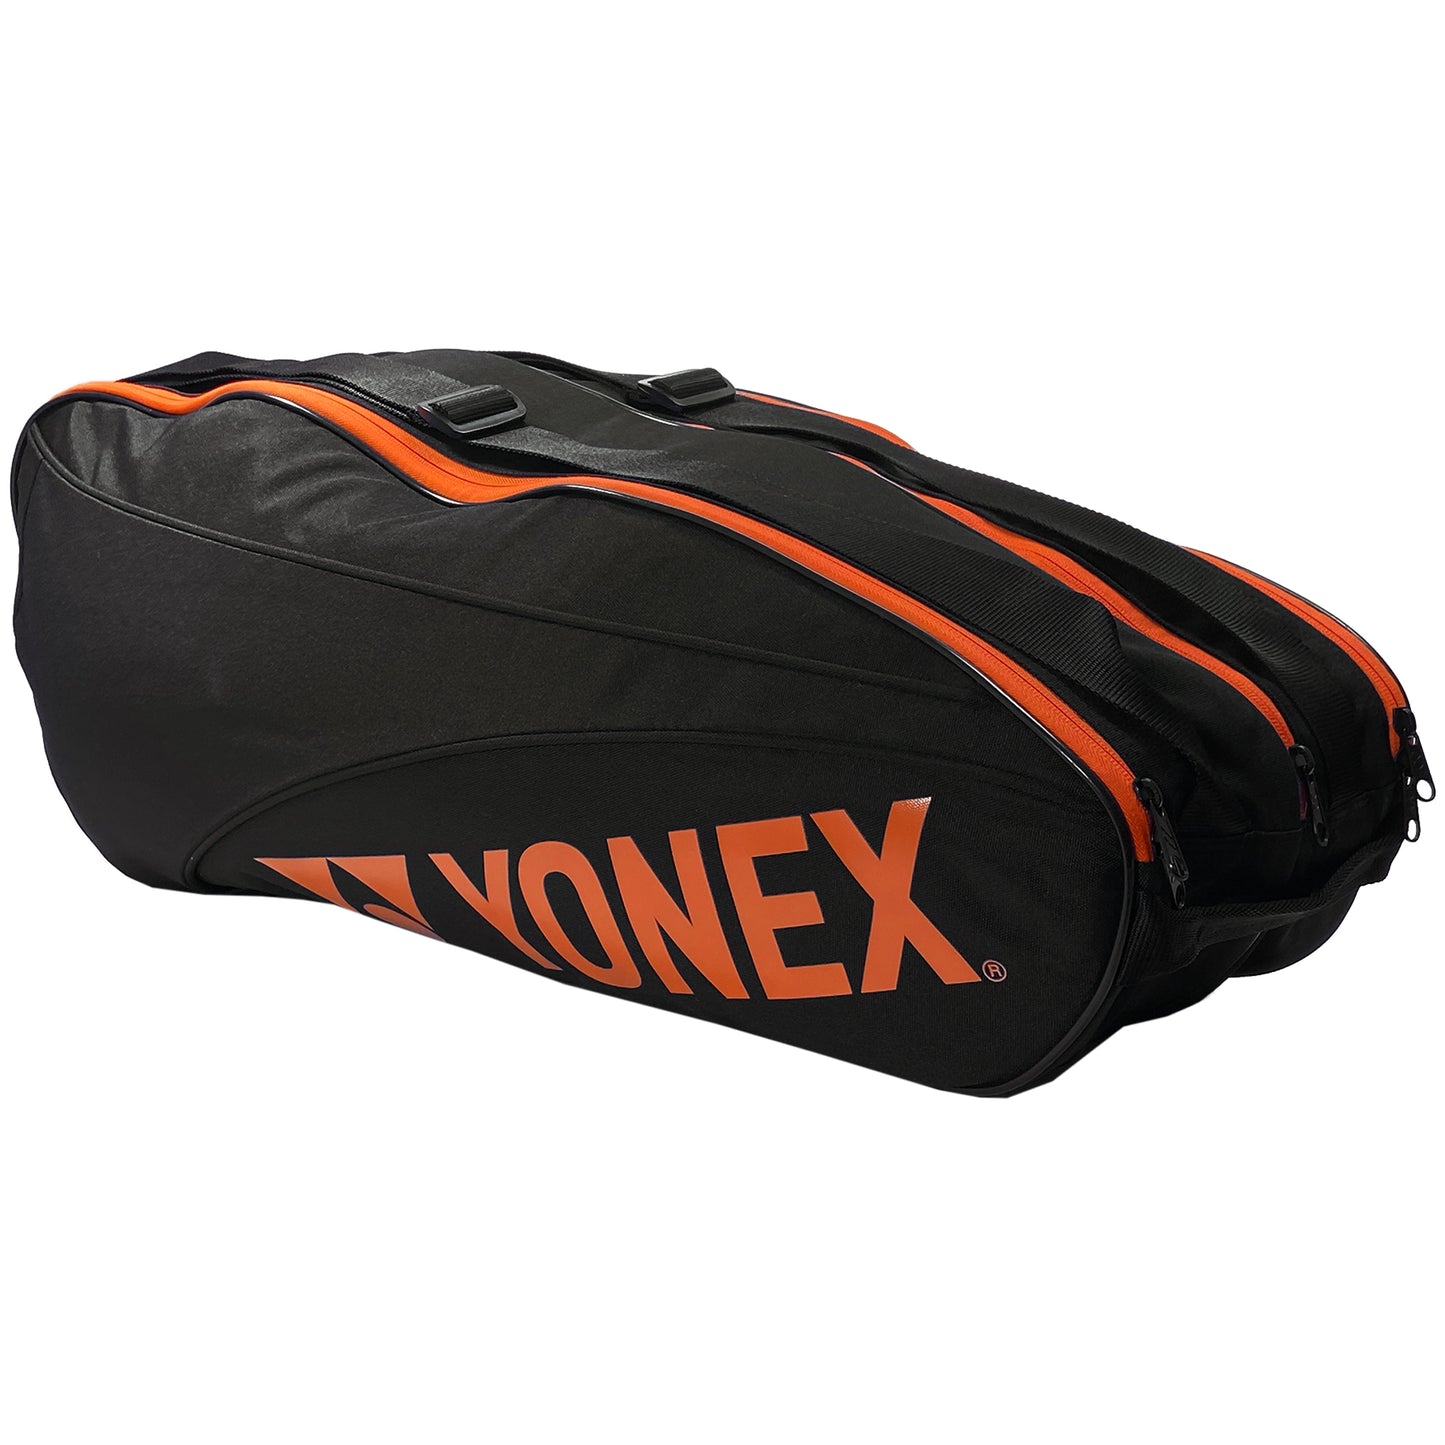 Yonex sac Team (BAG42326) Noir/Orange